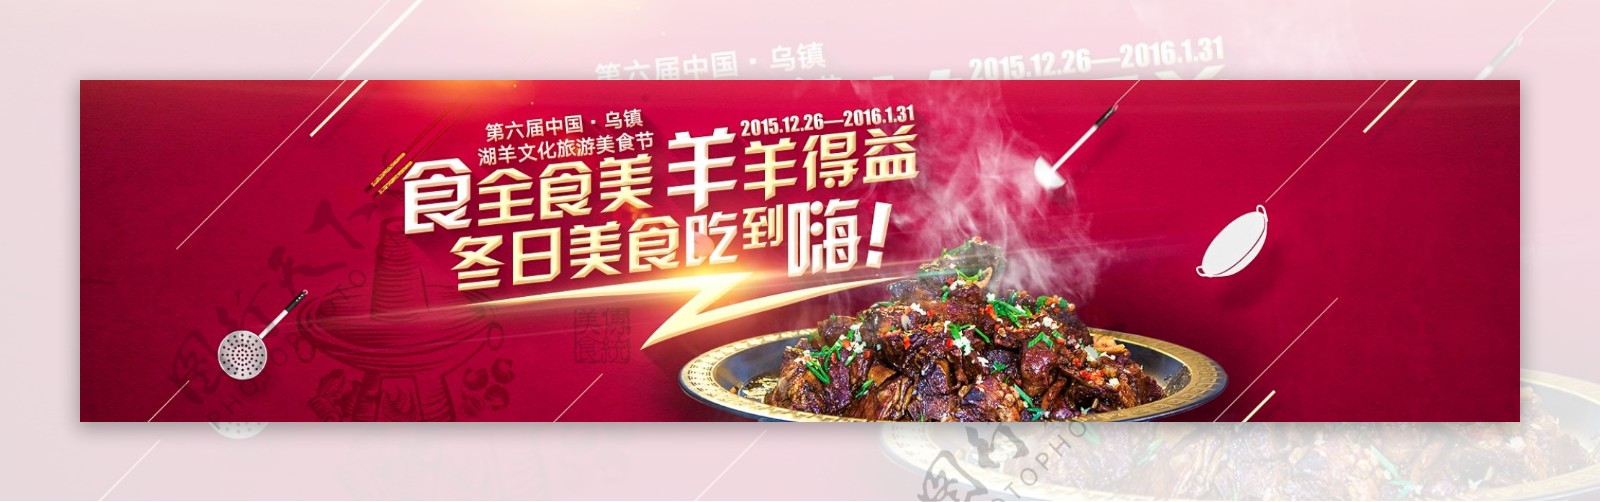 美食节羊肉节淘宝天猫海报banner